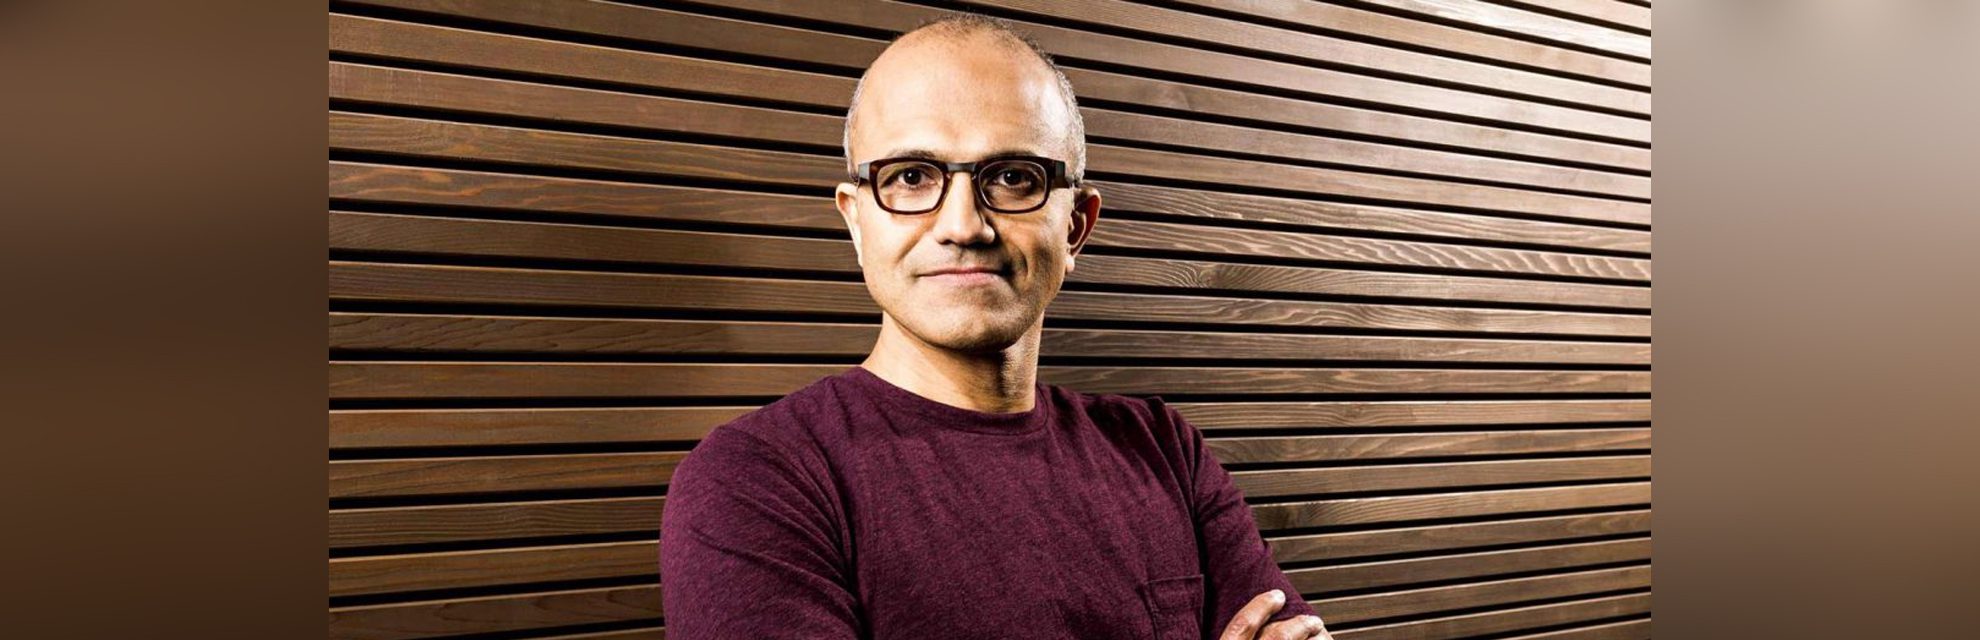 ความสำเร็จของ Satya Nadella CEO ของ Microsoft มาจากการเอาใจใส่